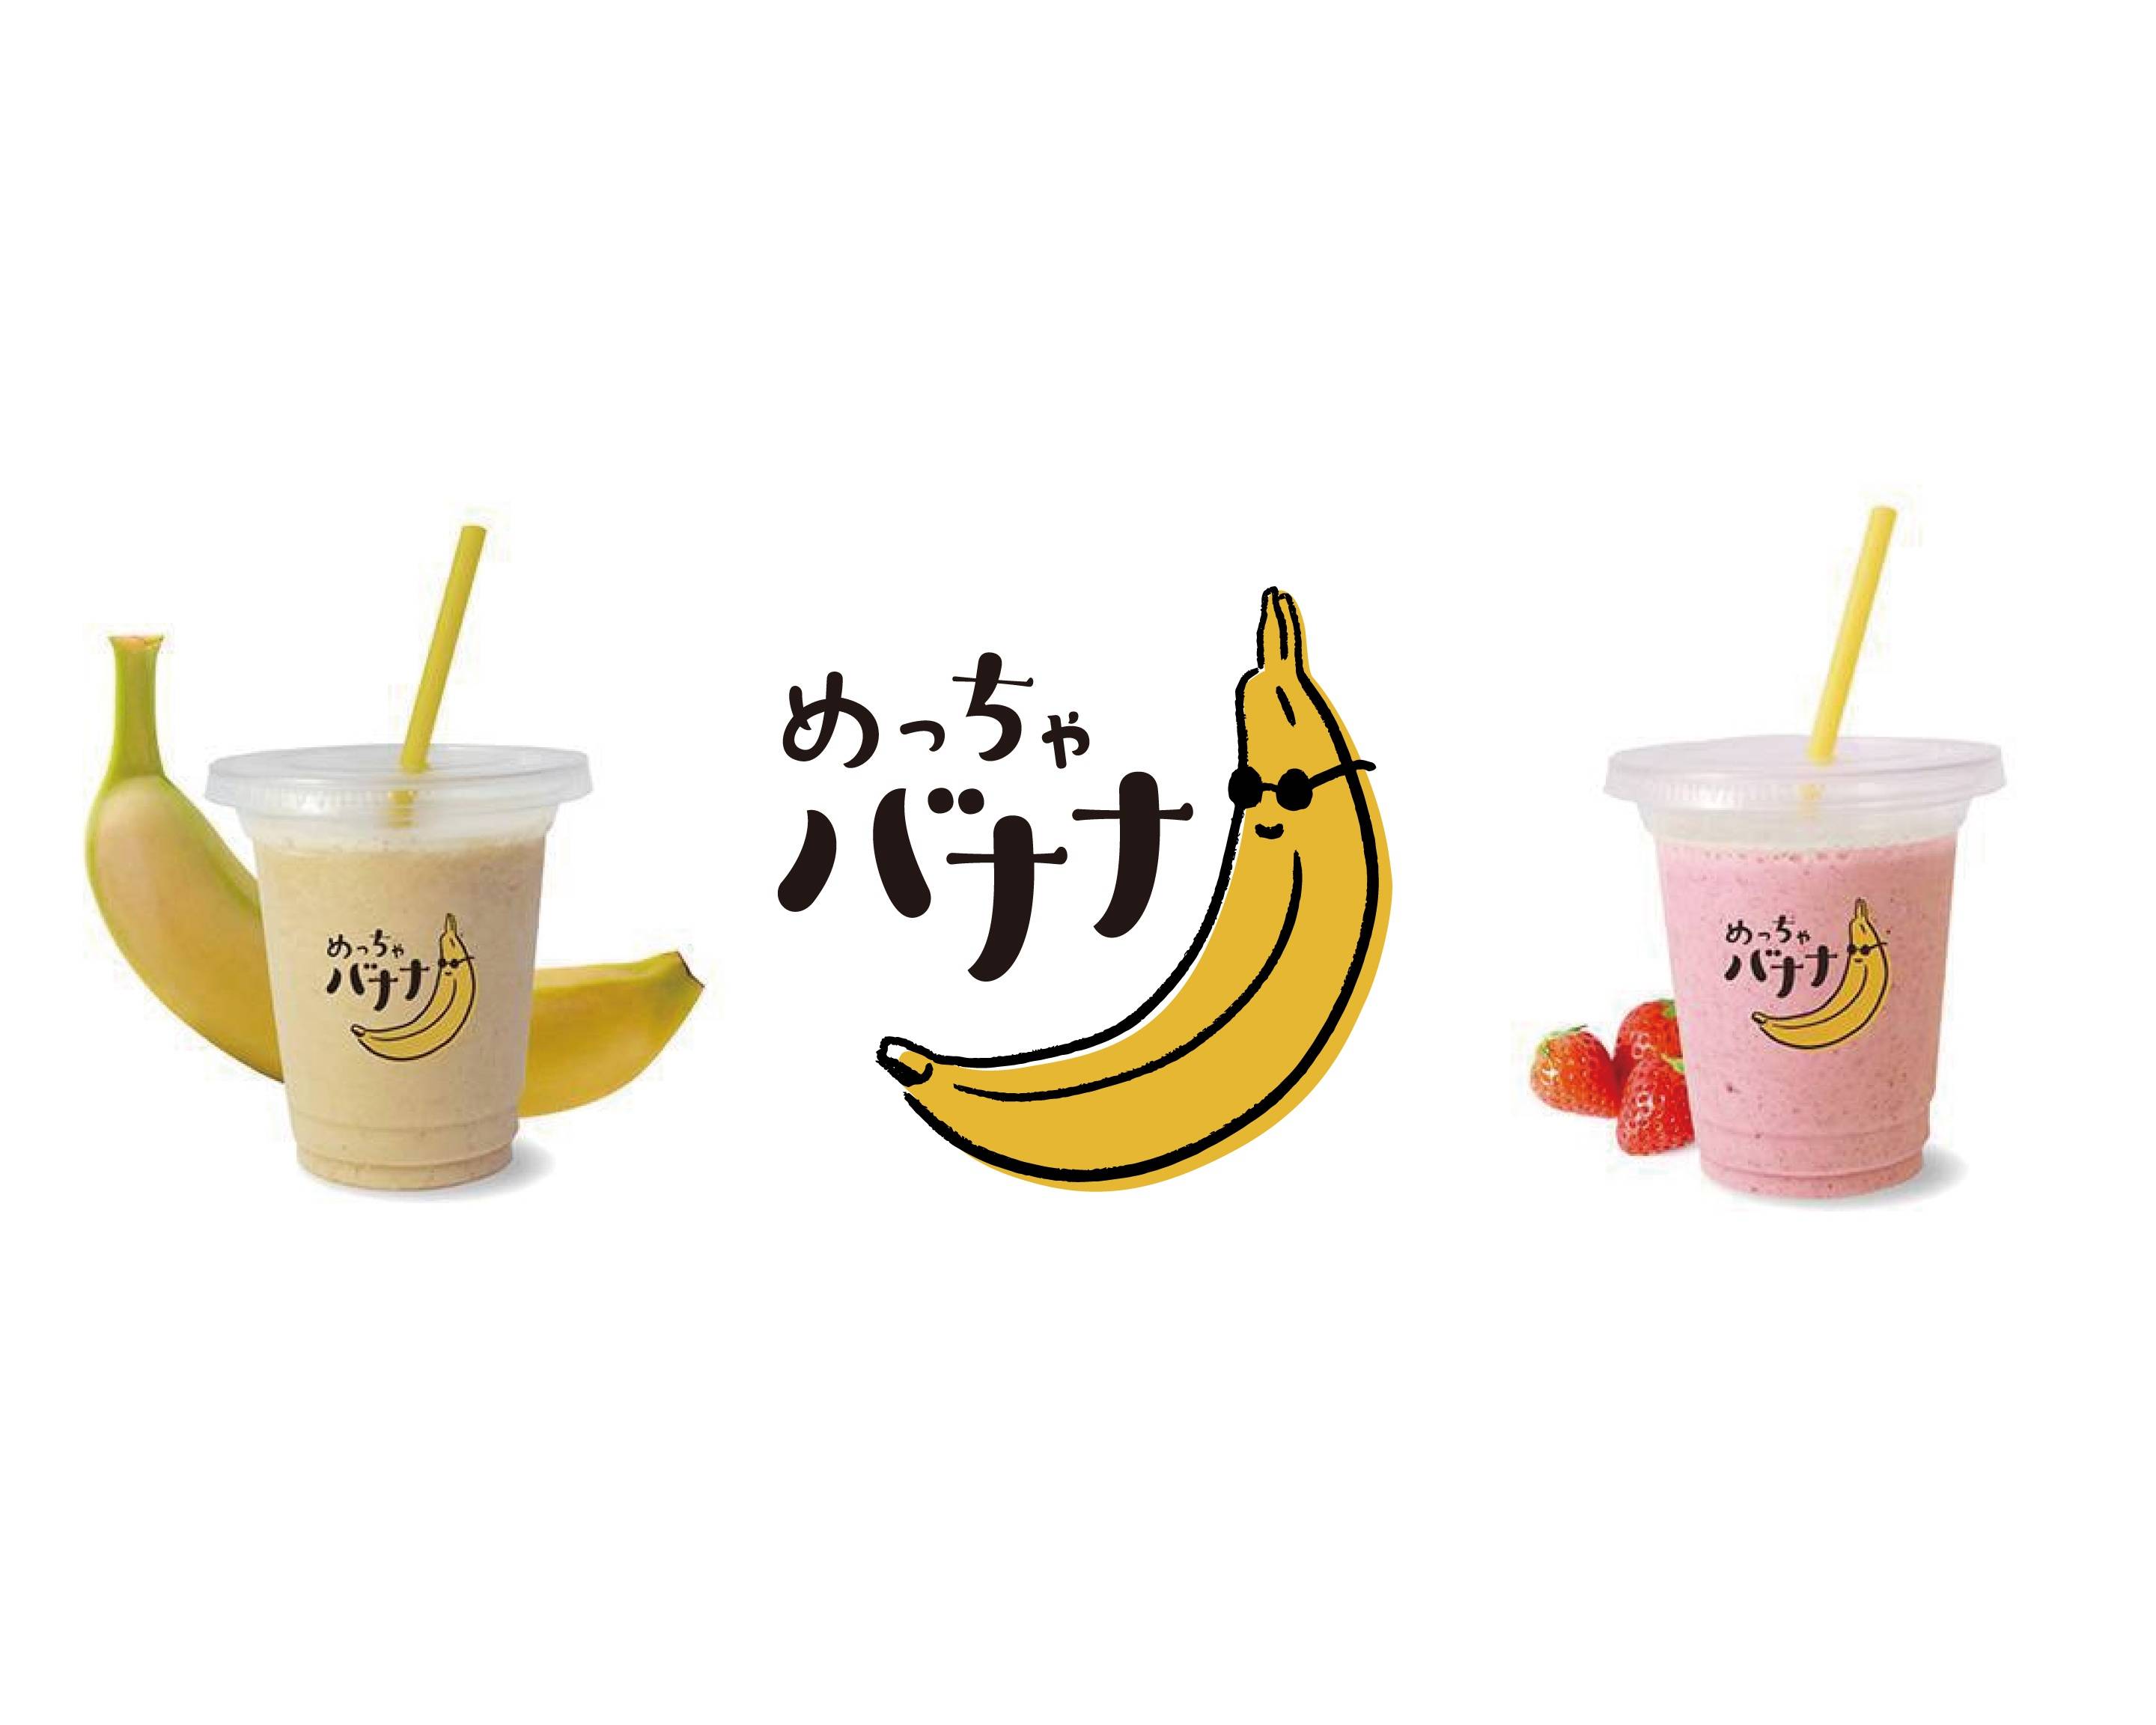 バナナジュース専門店 めっちゃバナナ delivery & takeaway menu 